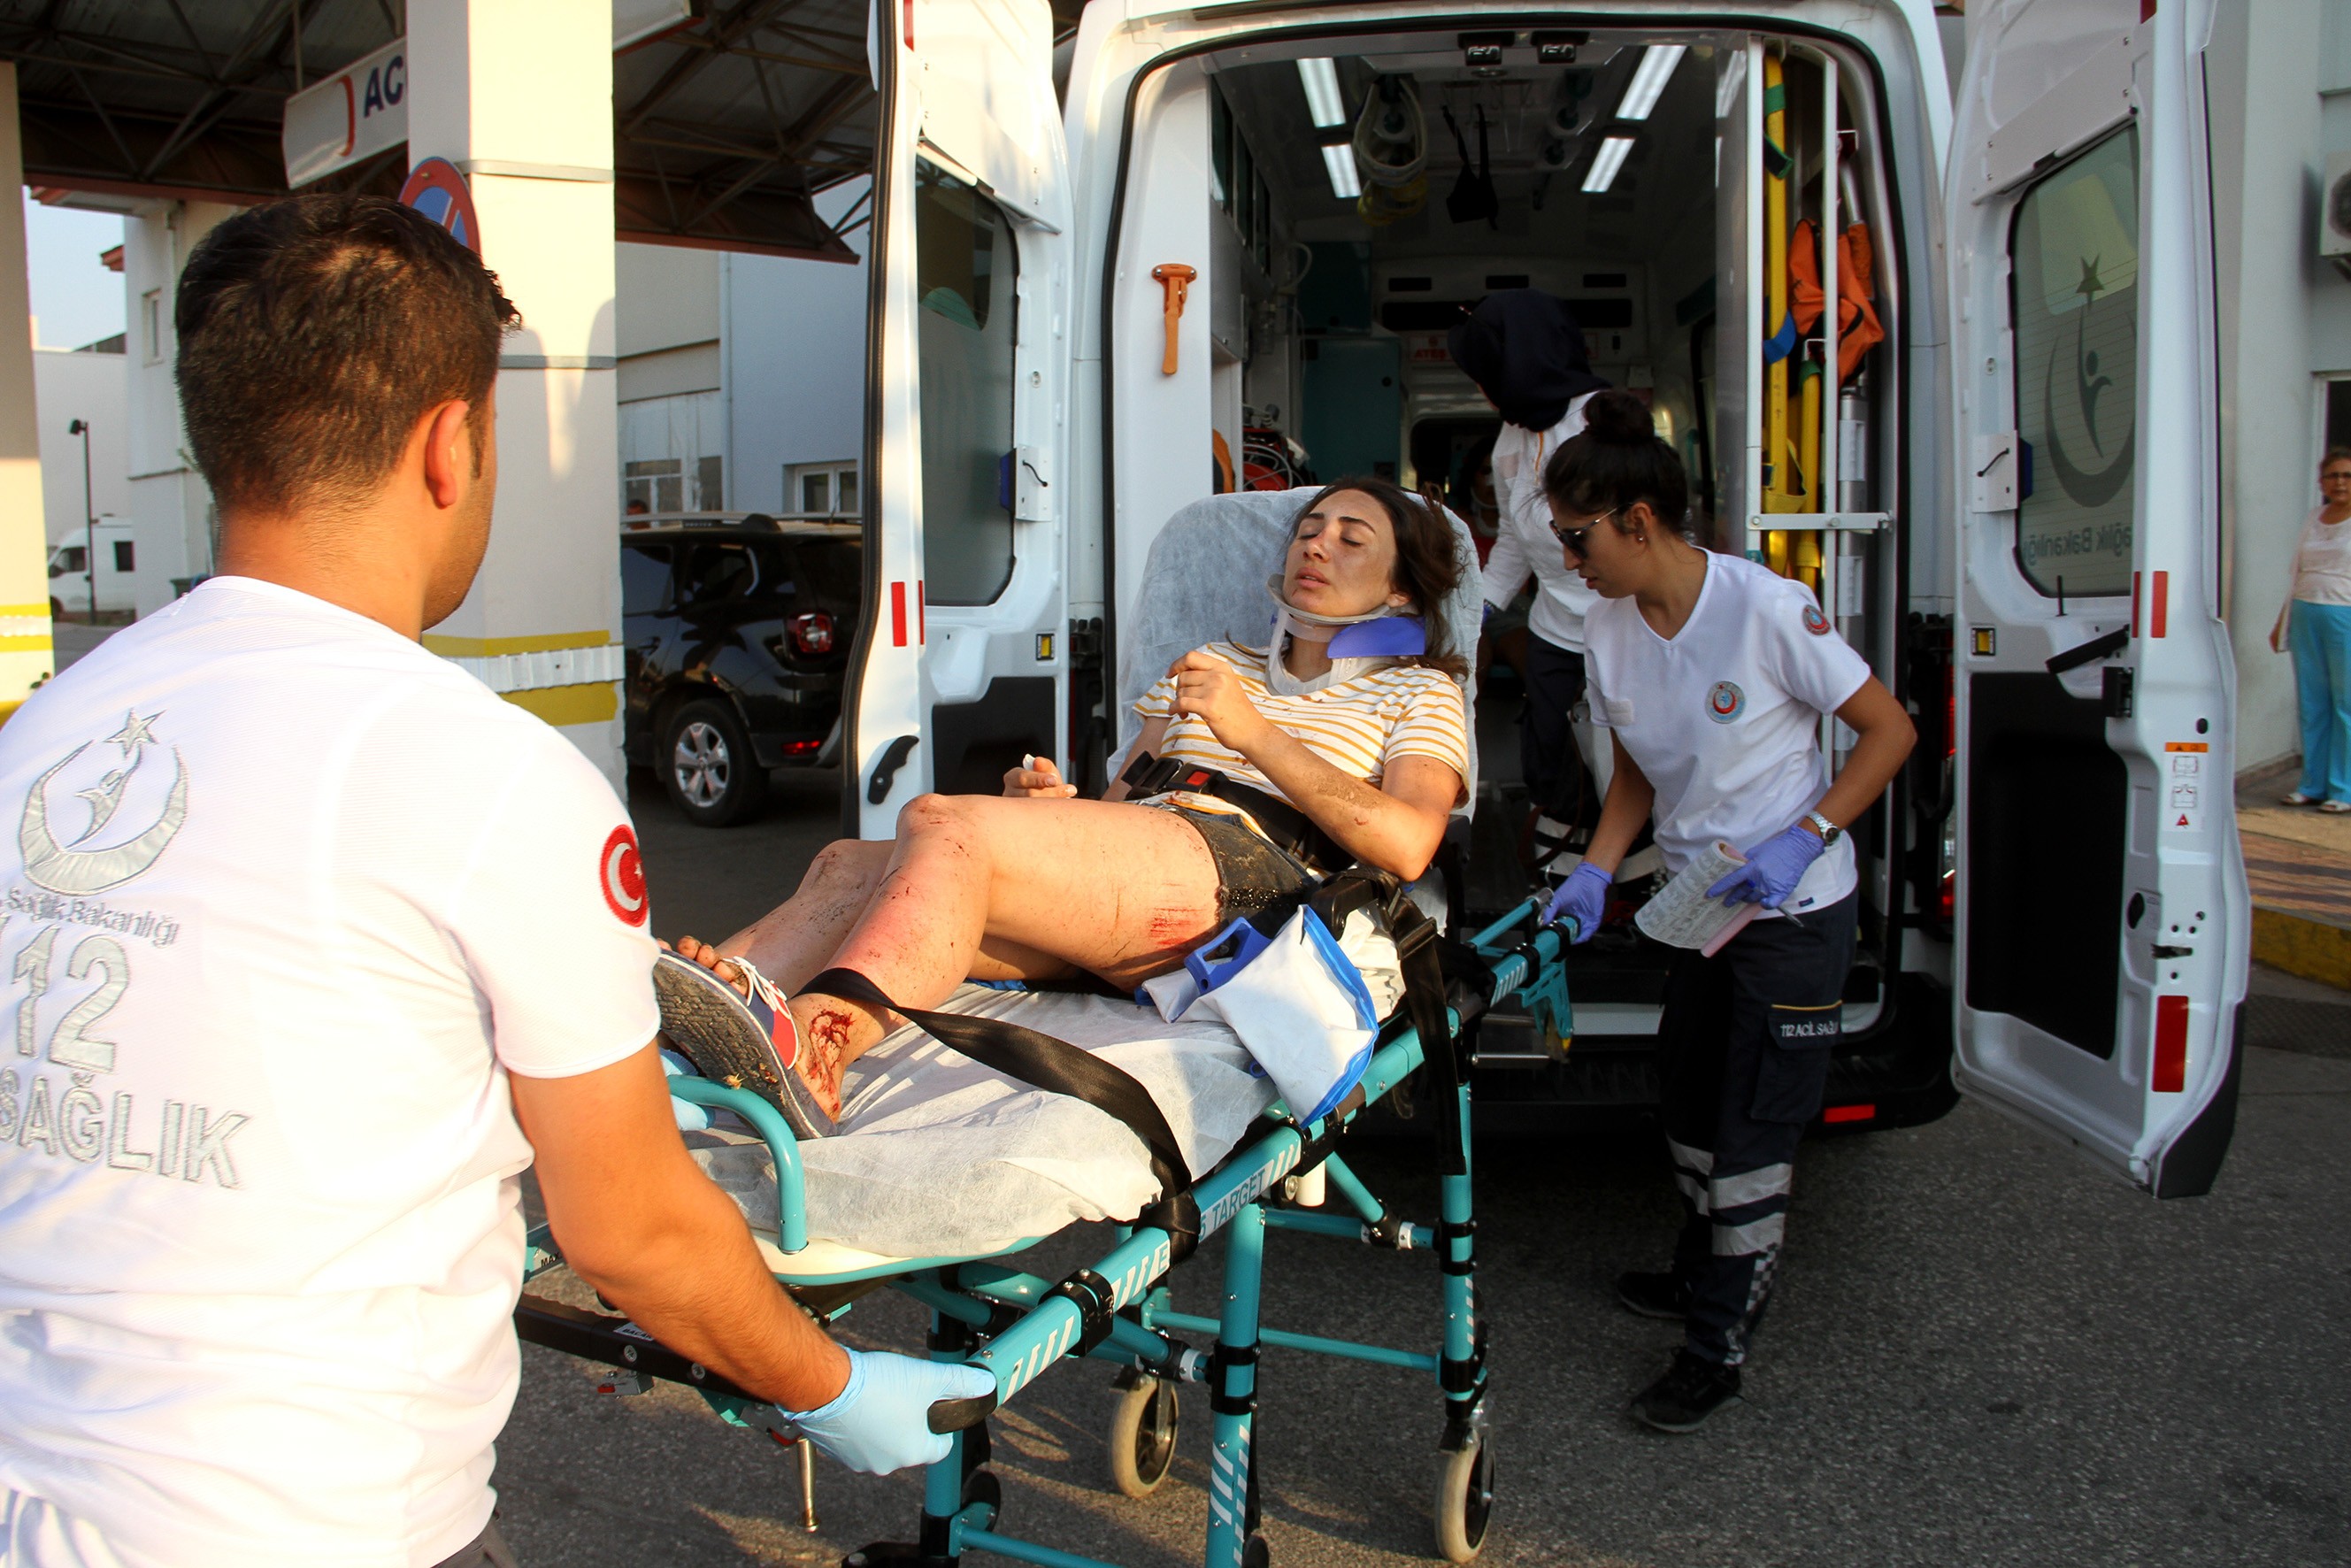  Fethiye-Antalya yolunda otobüs devrildi: 26 yaralı  haberi